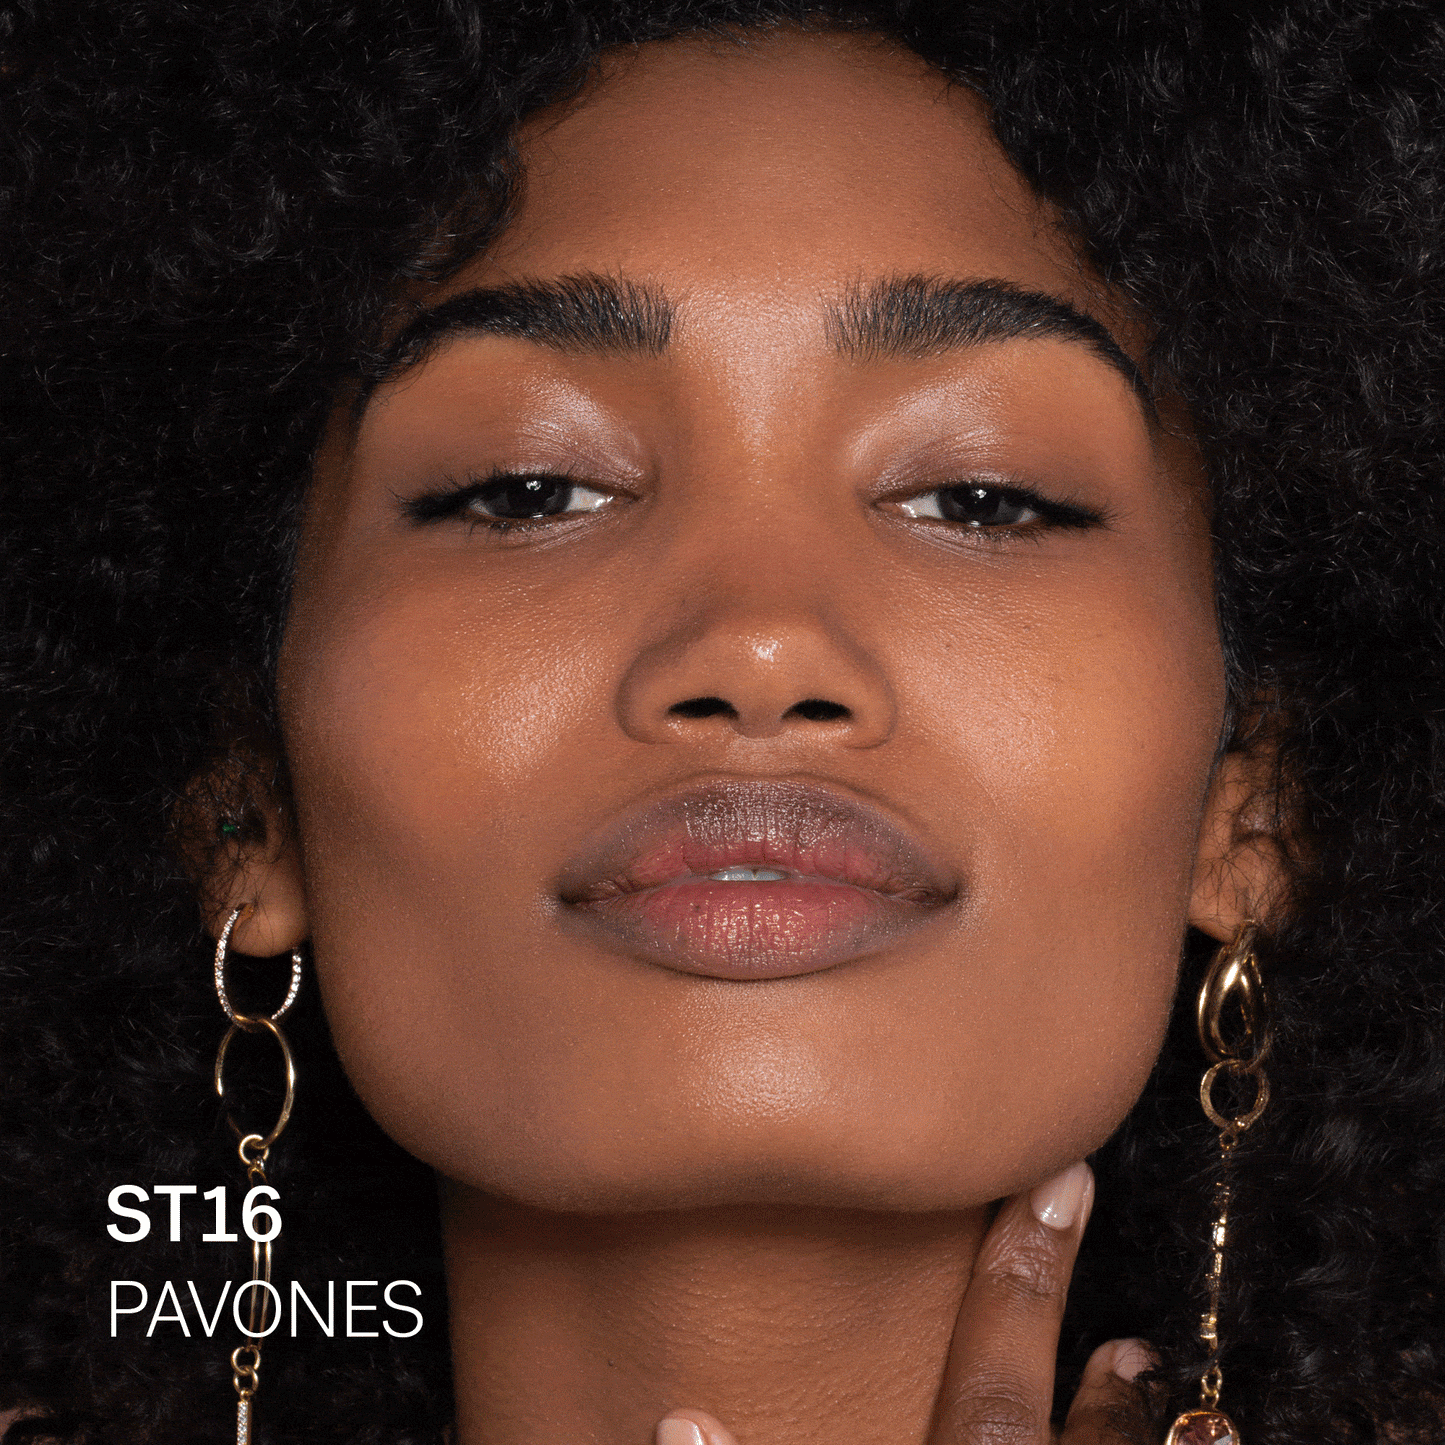 ST16 Pavones (for dark skin with cool undertones)